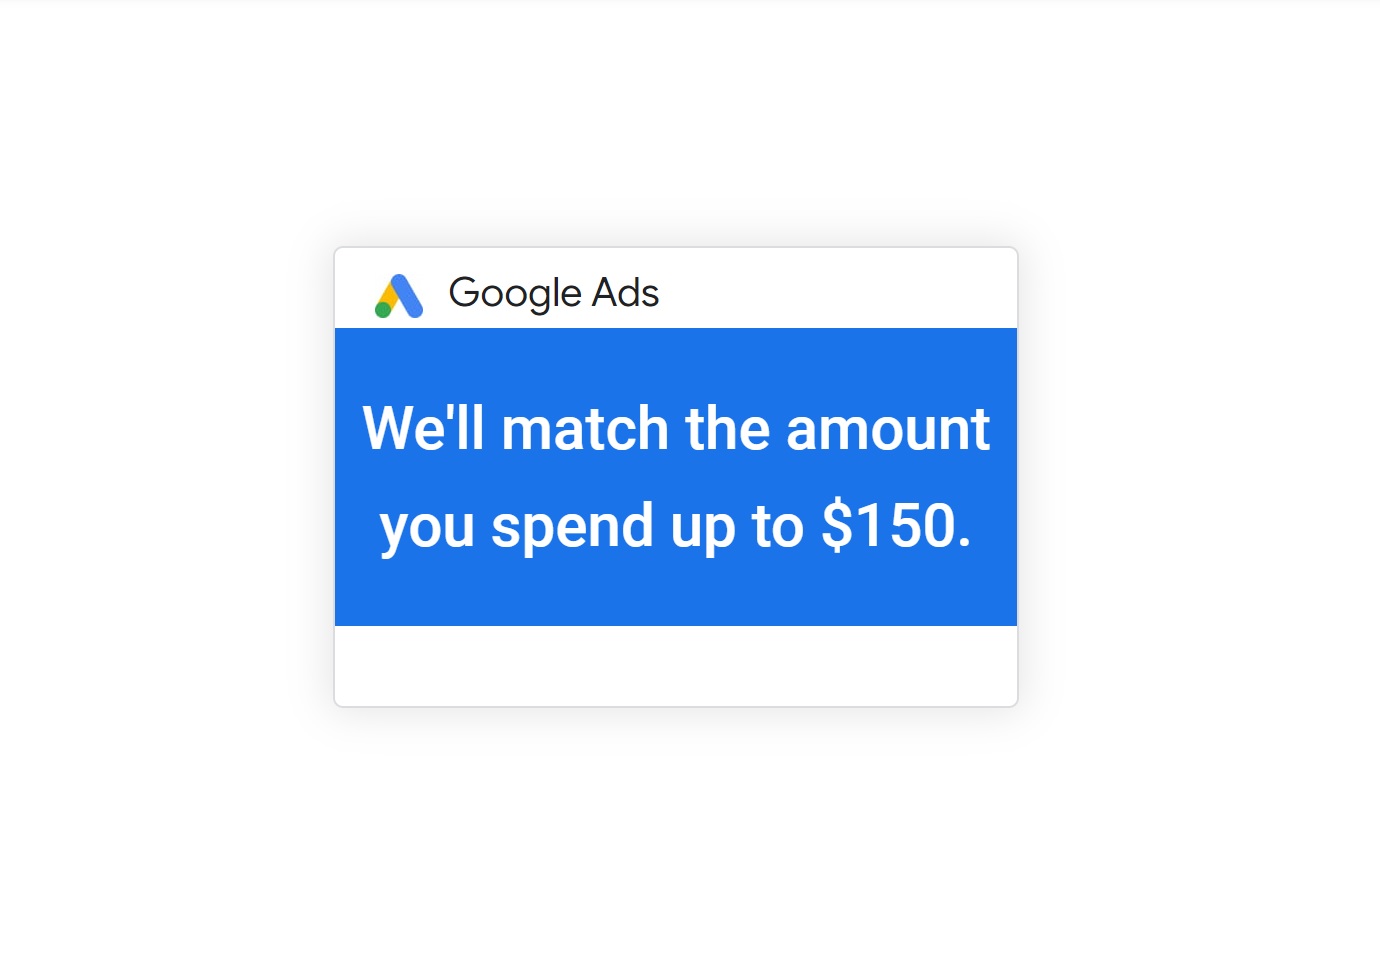 How do I get a $150 Google Ads coupon promo code?